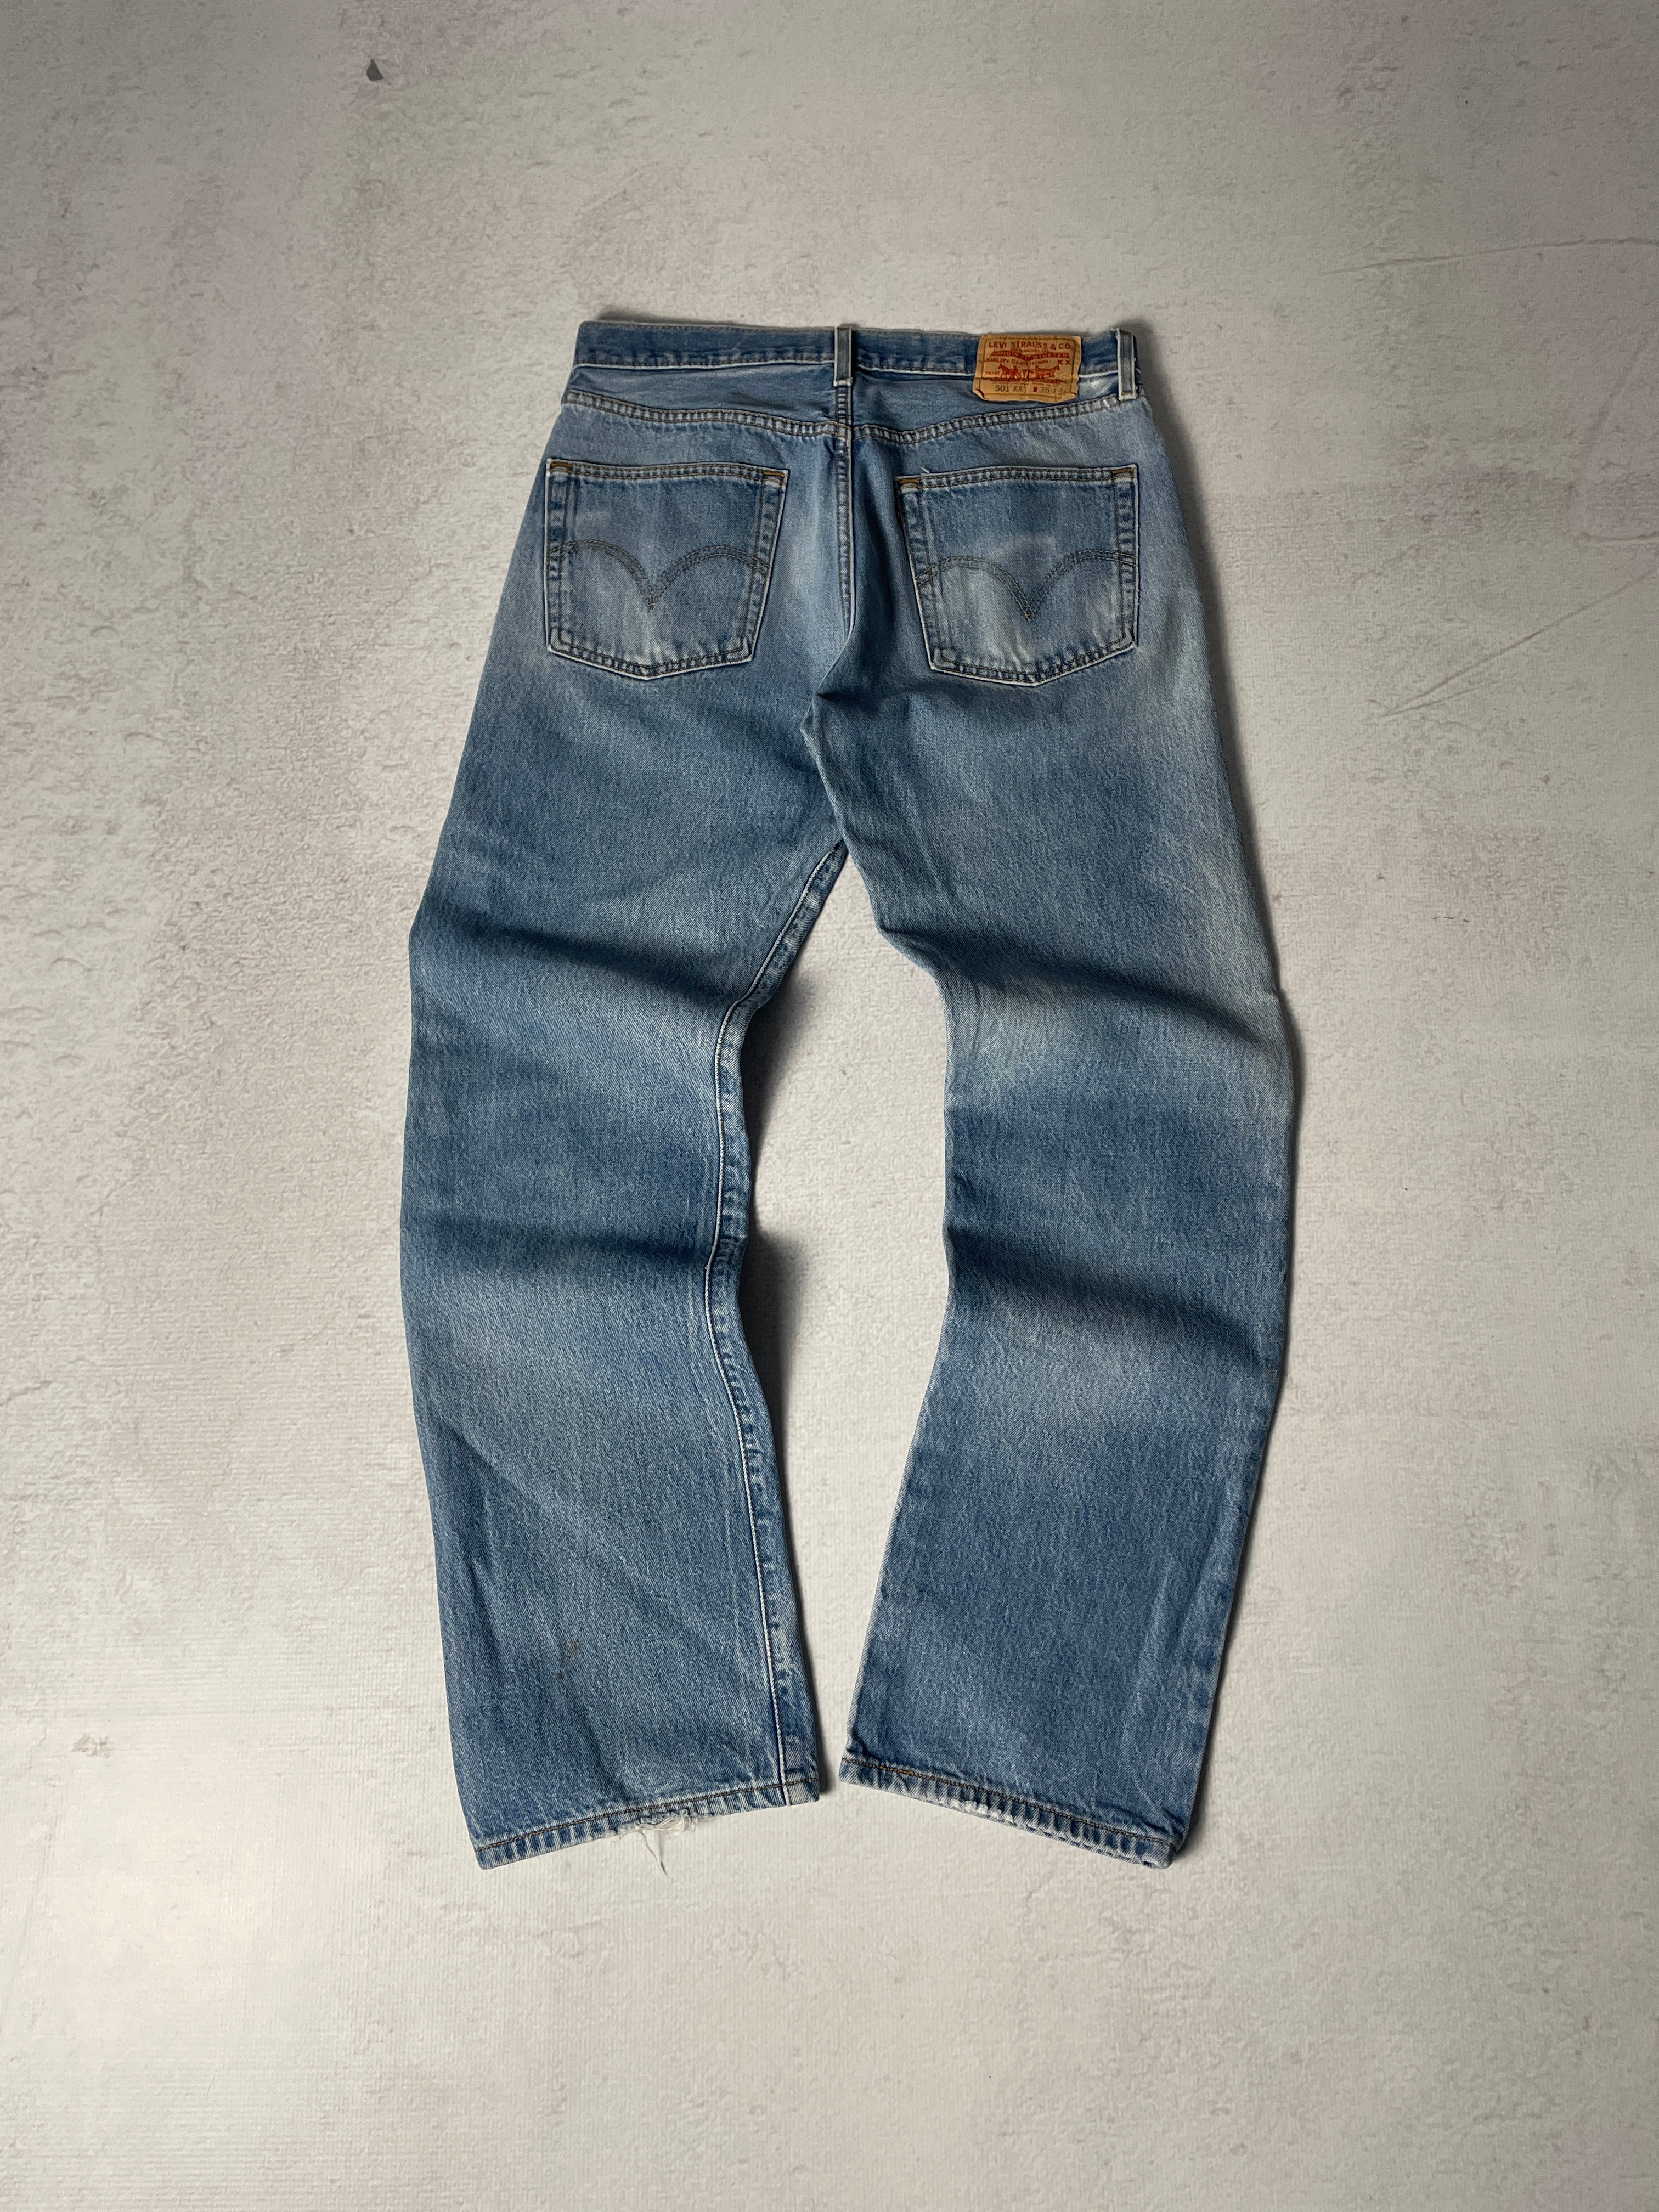 Vintage Distressed Levis 501 Jeans - Men's 35Wx36L